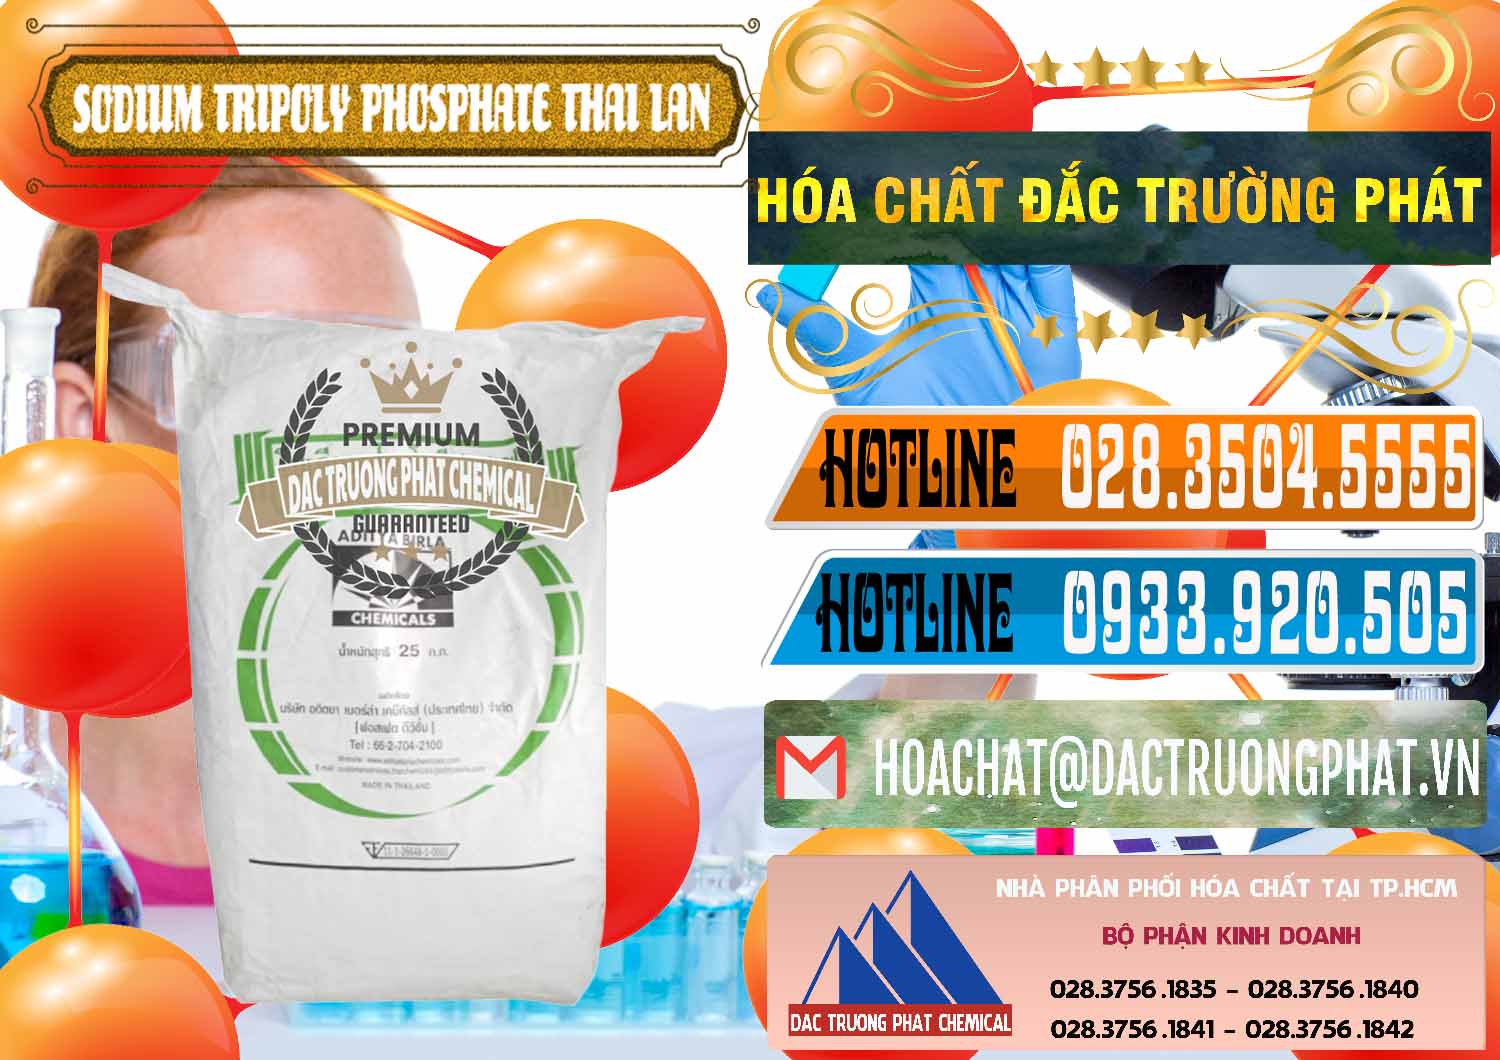 Cty cung cấp _ bán Sodium Tripoly Phosphate - STPP Aditya Birla Grasim Thái Lan Thailand - 0421 - Cty chuyên phân phối _ kinh doanh hóa chất tại TP.HCM - stmp.net